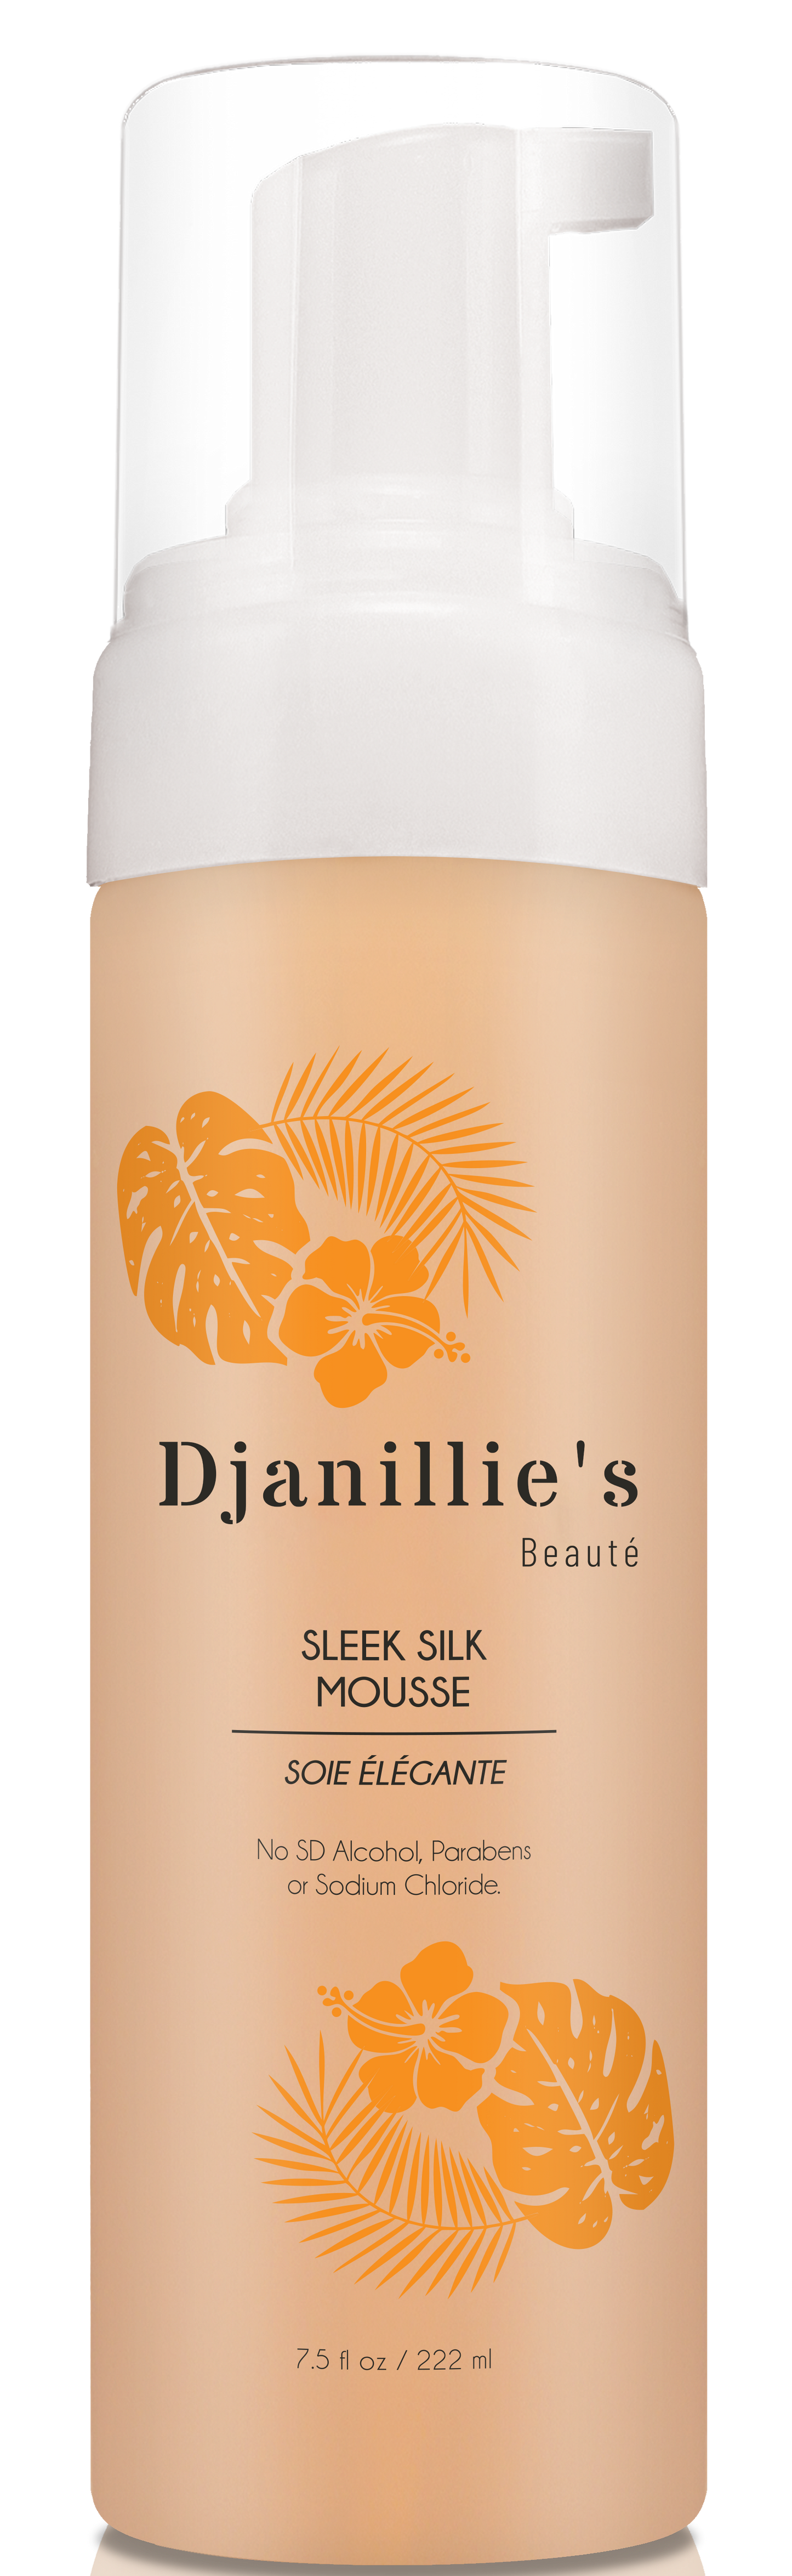 Sleek Silk Mousse - Djanillie's Beauté